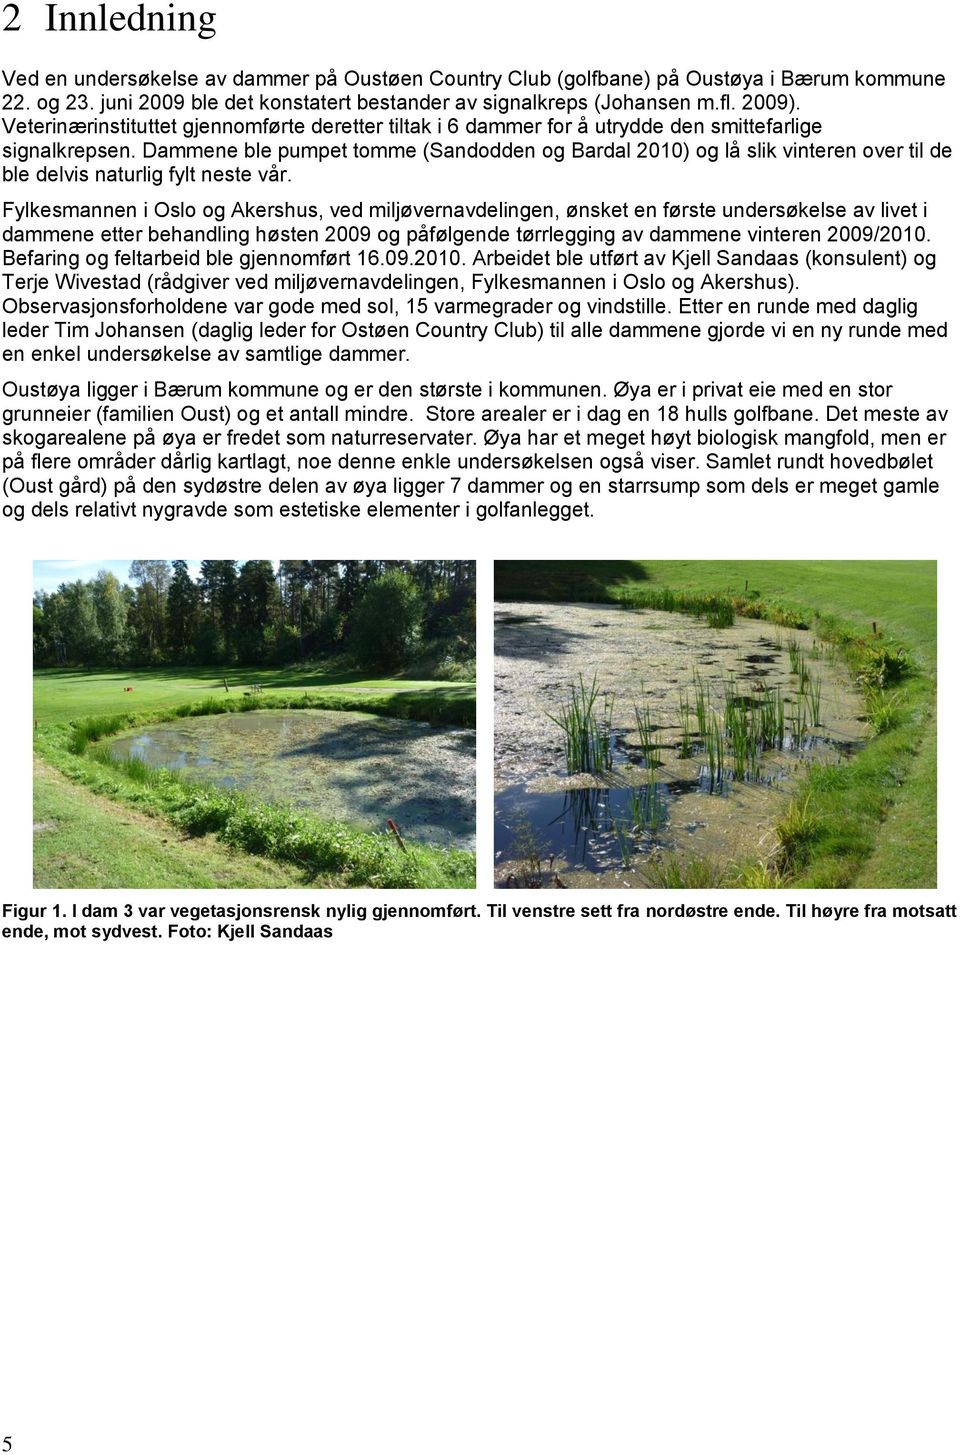 Dammene ble pumpet tomme (Sandodden og Bardal 2010) og lå slik vinteren over til de ble delvis naturlig fylt neste vår.